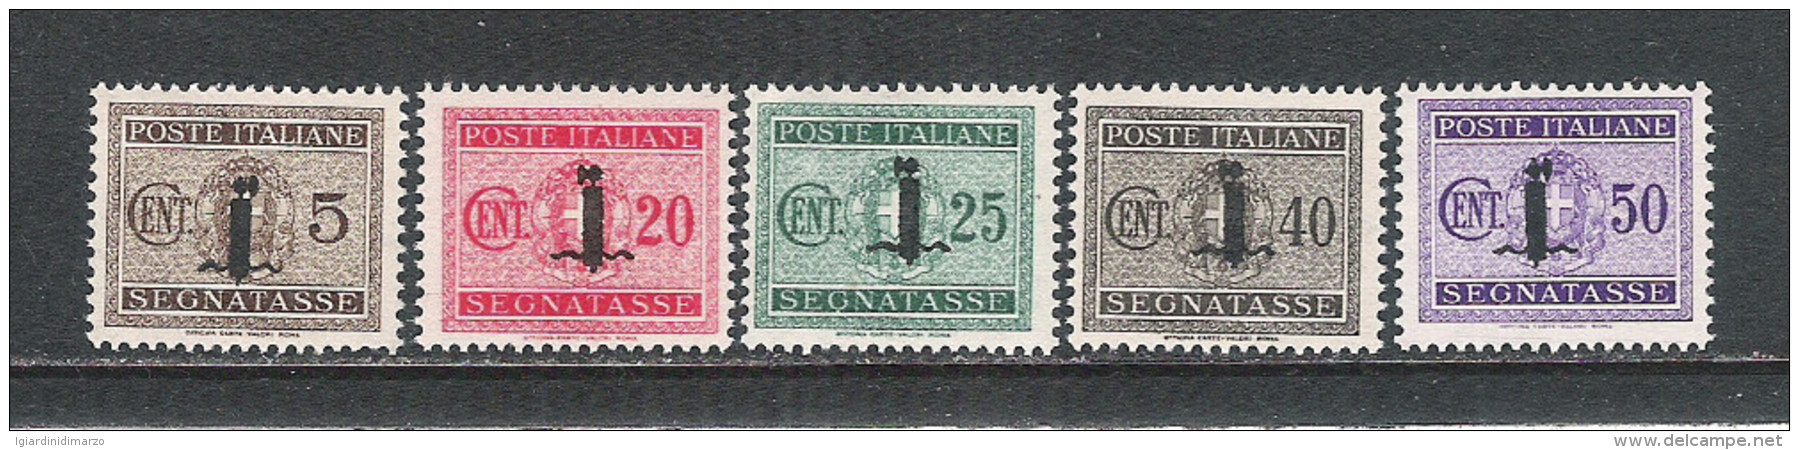 ITALIA-R.S.I.-1944 -5 Valori Nuovi S.t.l. Segnatasse Soprastampati Con Fascio-SOPRASTAMPA NON GARANTITA- In Ottime Cond. - Taxe